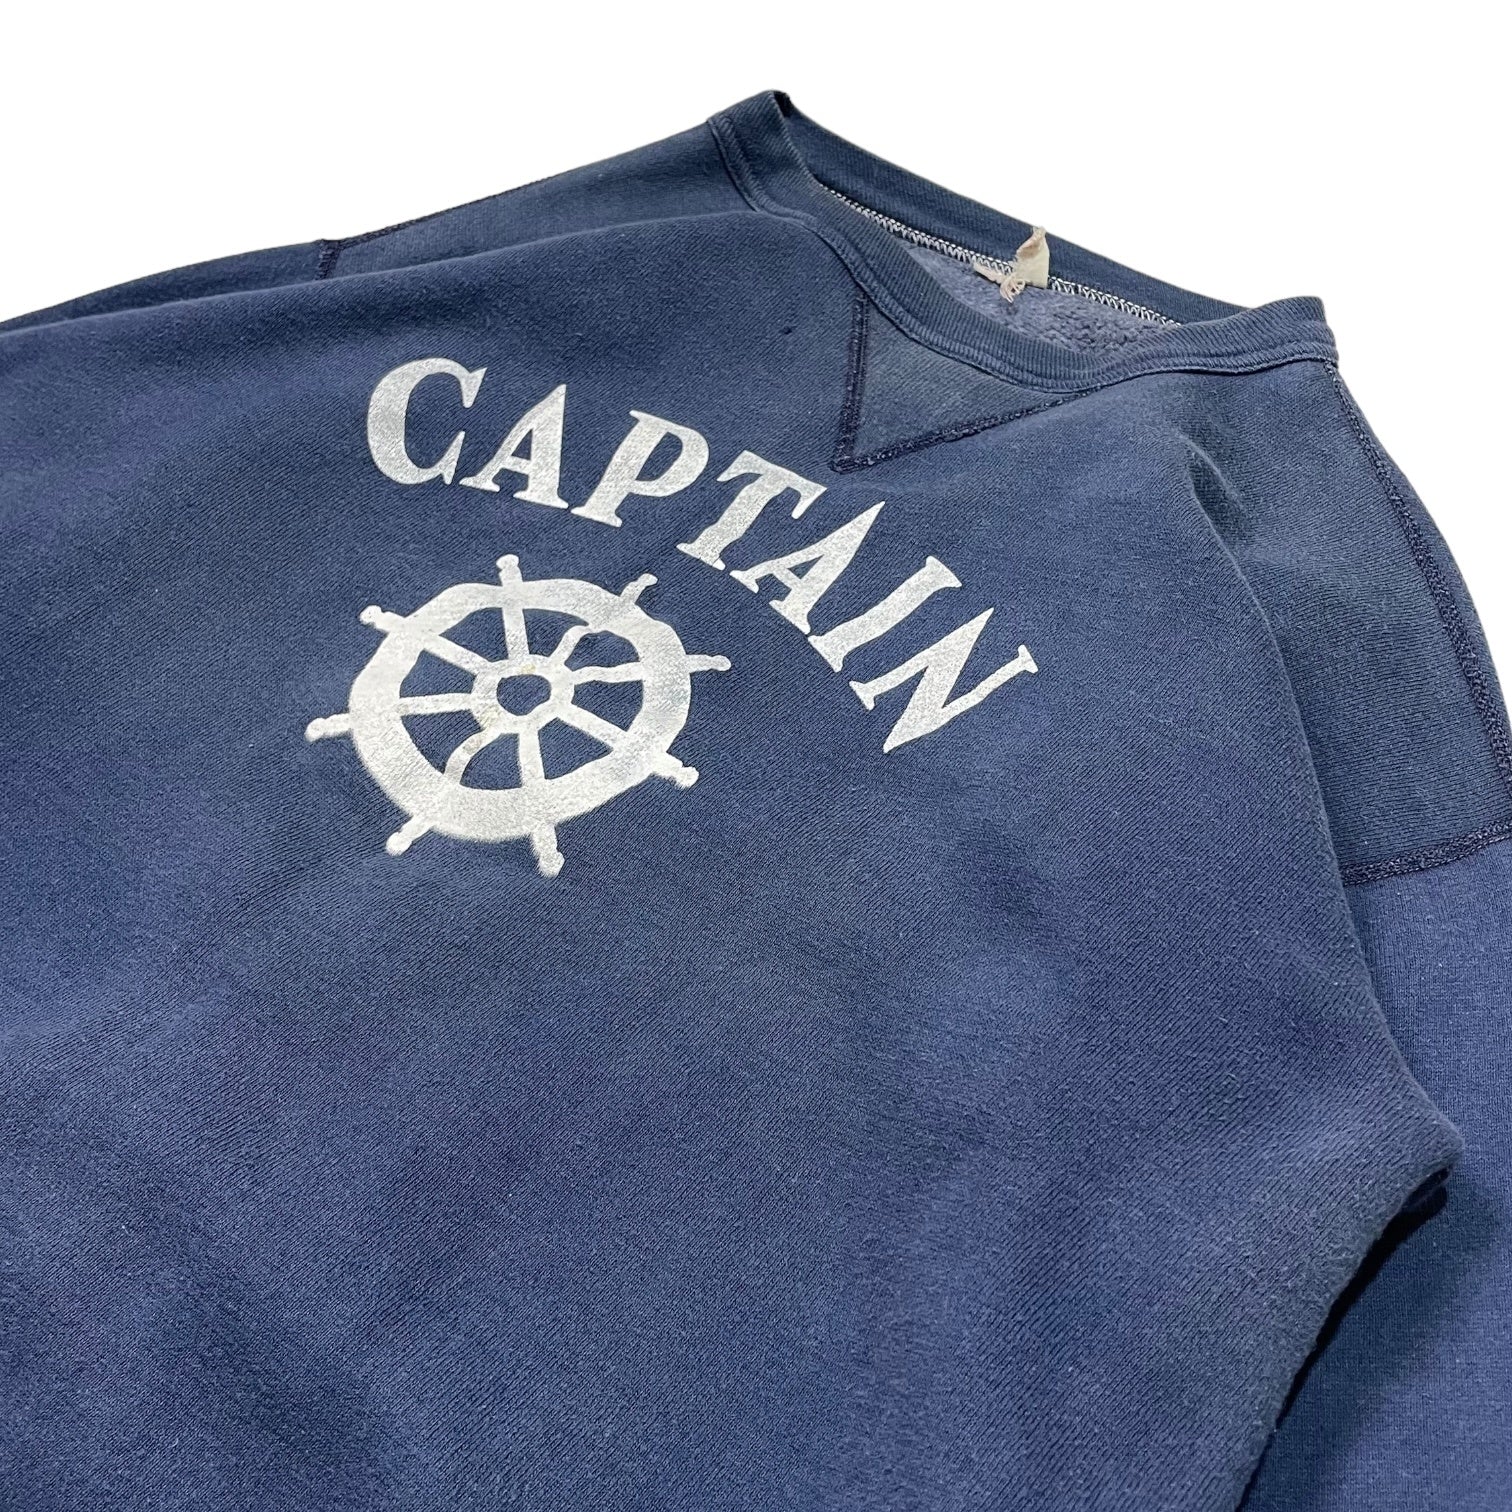 RUSSELL ATHLETIC(ラッセルアスレティック) 60's~70's  "CAPTAIN" vintage sweatshirts 前V ヴィンテージ スウェット プリント 表記無し(M程度) ネイビー 稀少 サイズタグ後期 68年～71年 USA製 舵